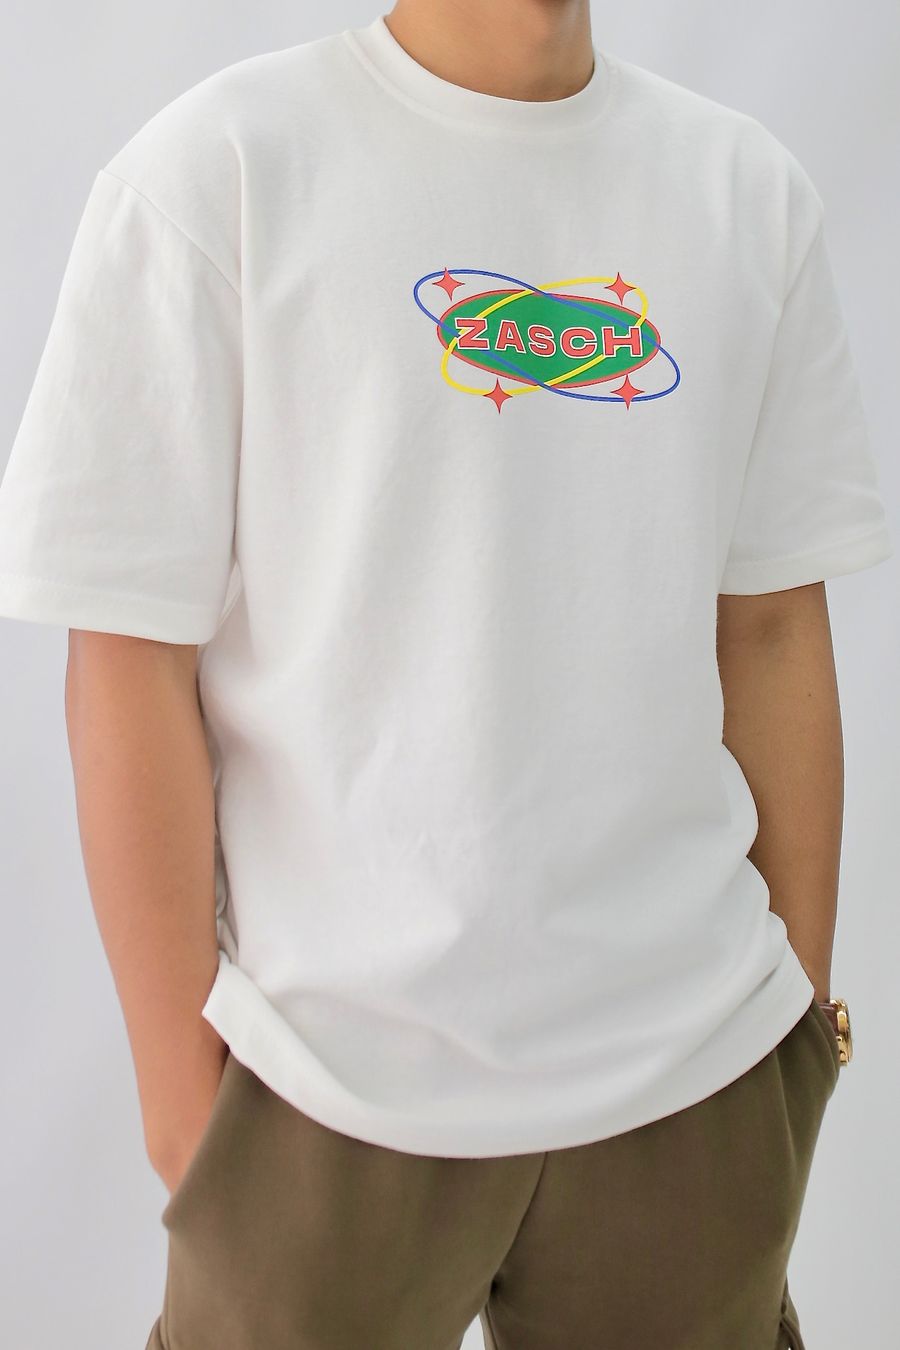 Zasch | Dizzy Galaxy T-Shirt